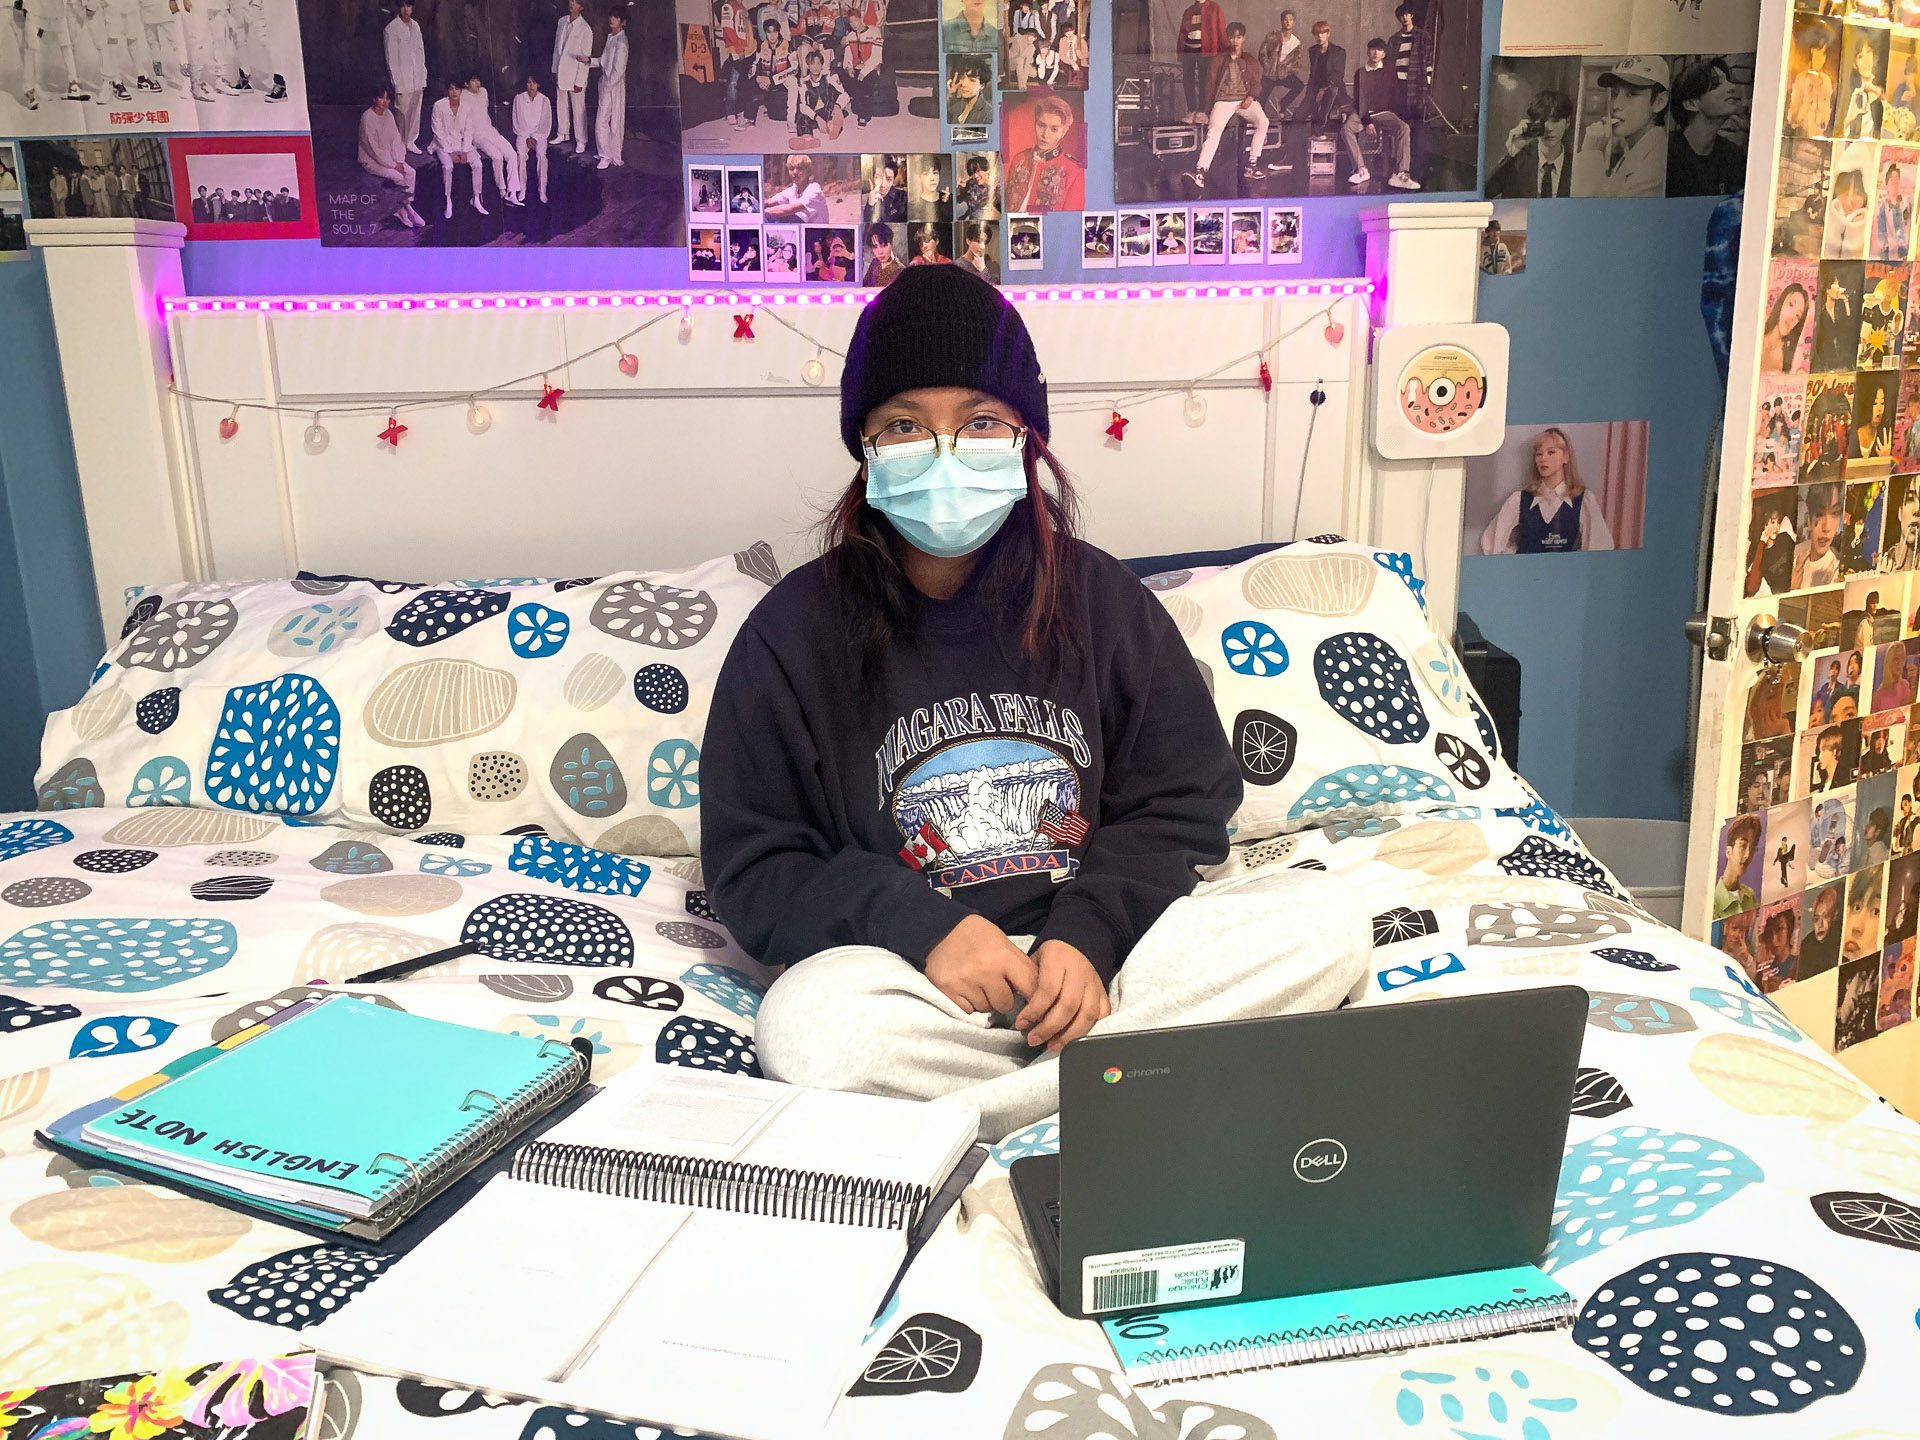 Gisselle Baltazar, élève du CPS, fait ses devoirs à la maison alors que les cours sont annulés pendant l'opération COVID.